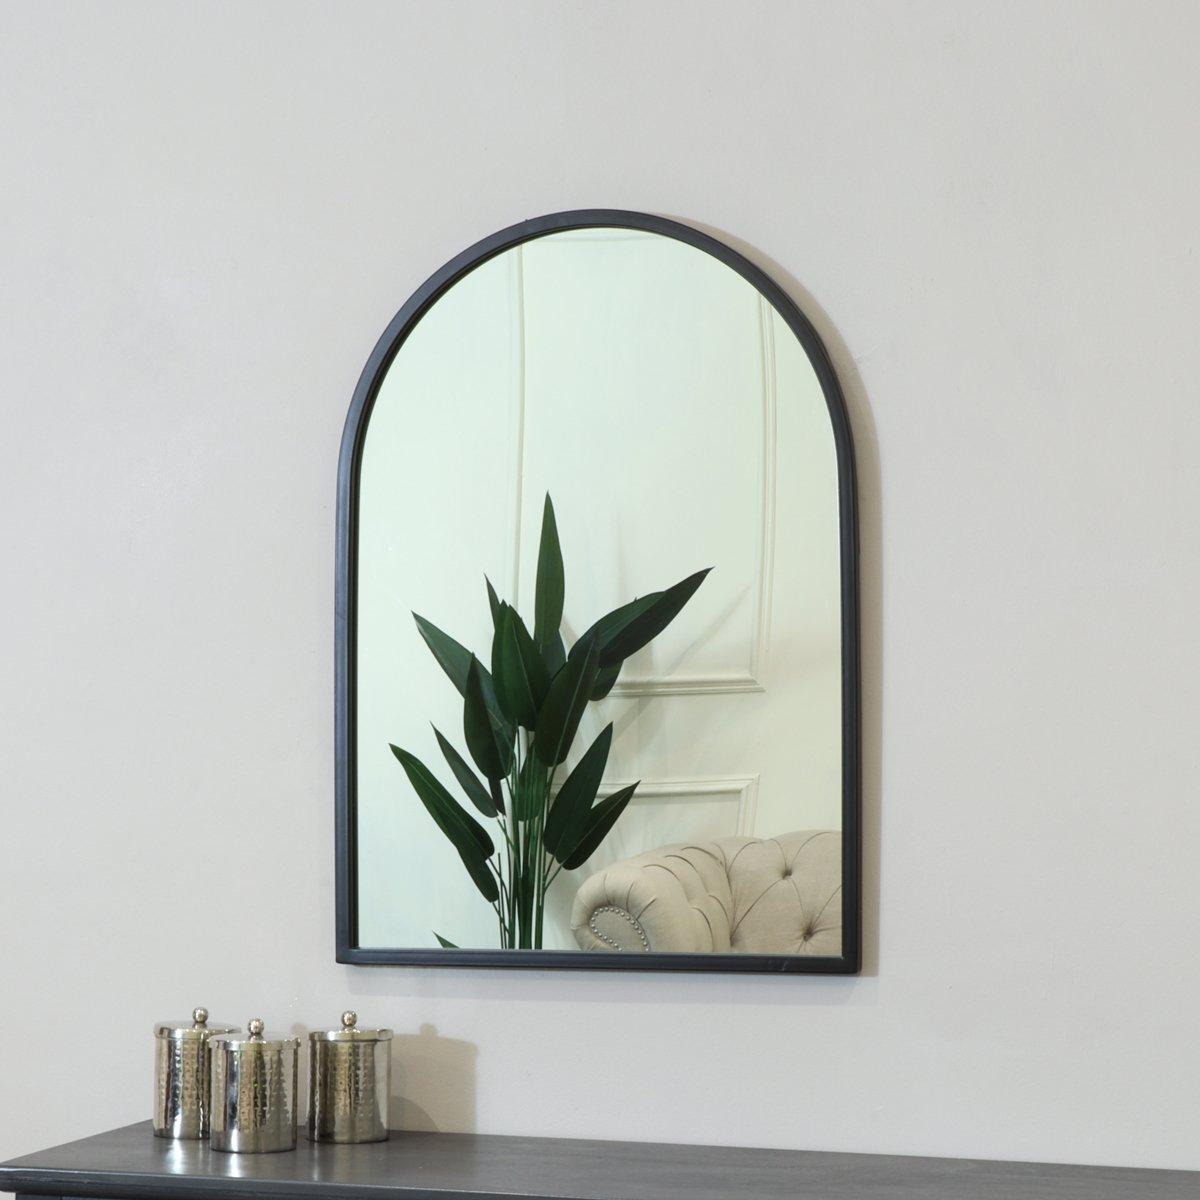 Framed Black Arched Mirror 70cm X 50cm - image 1